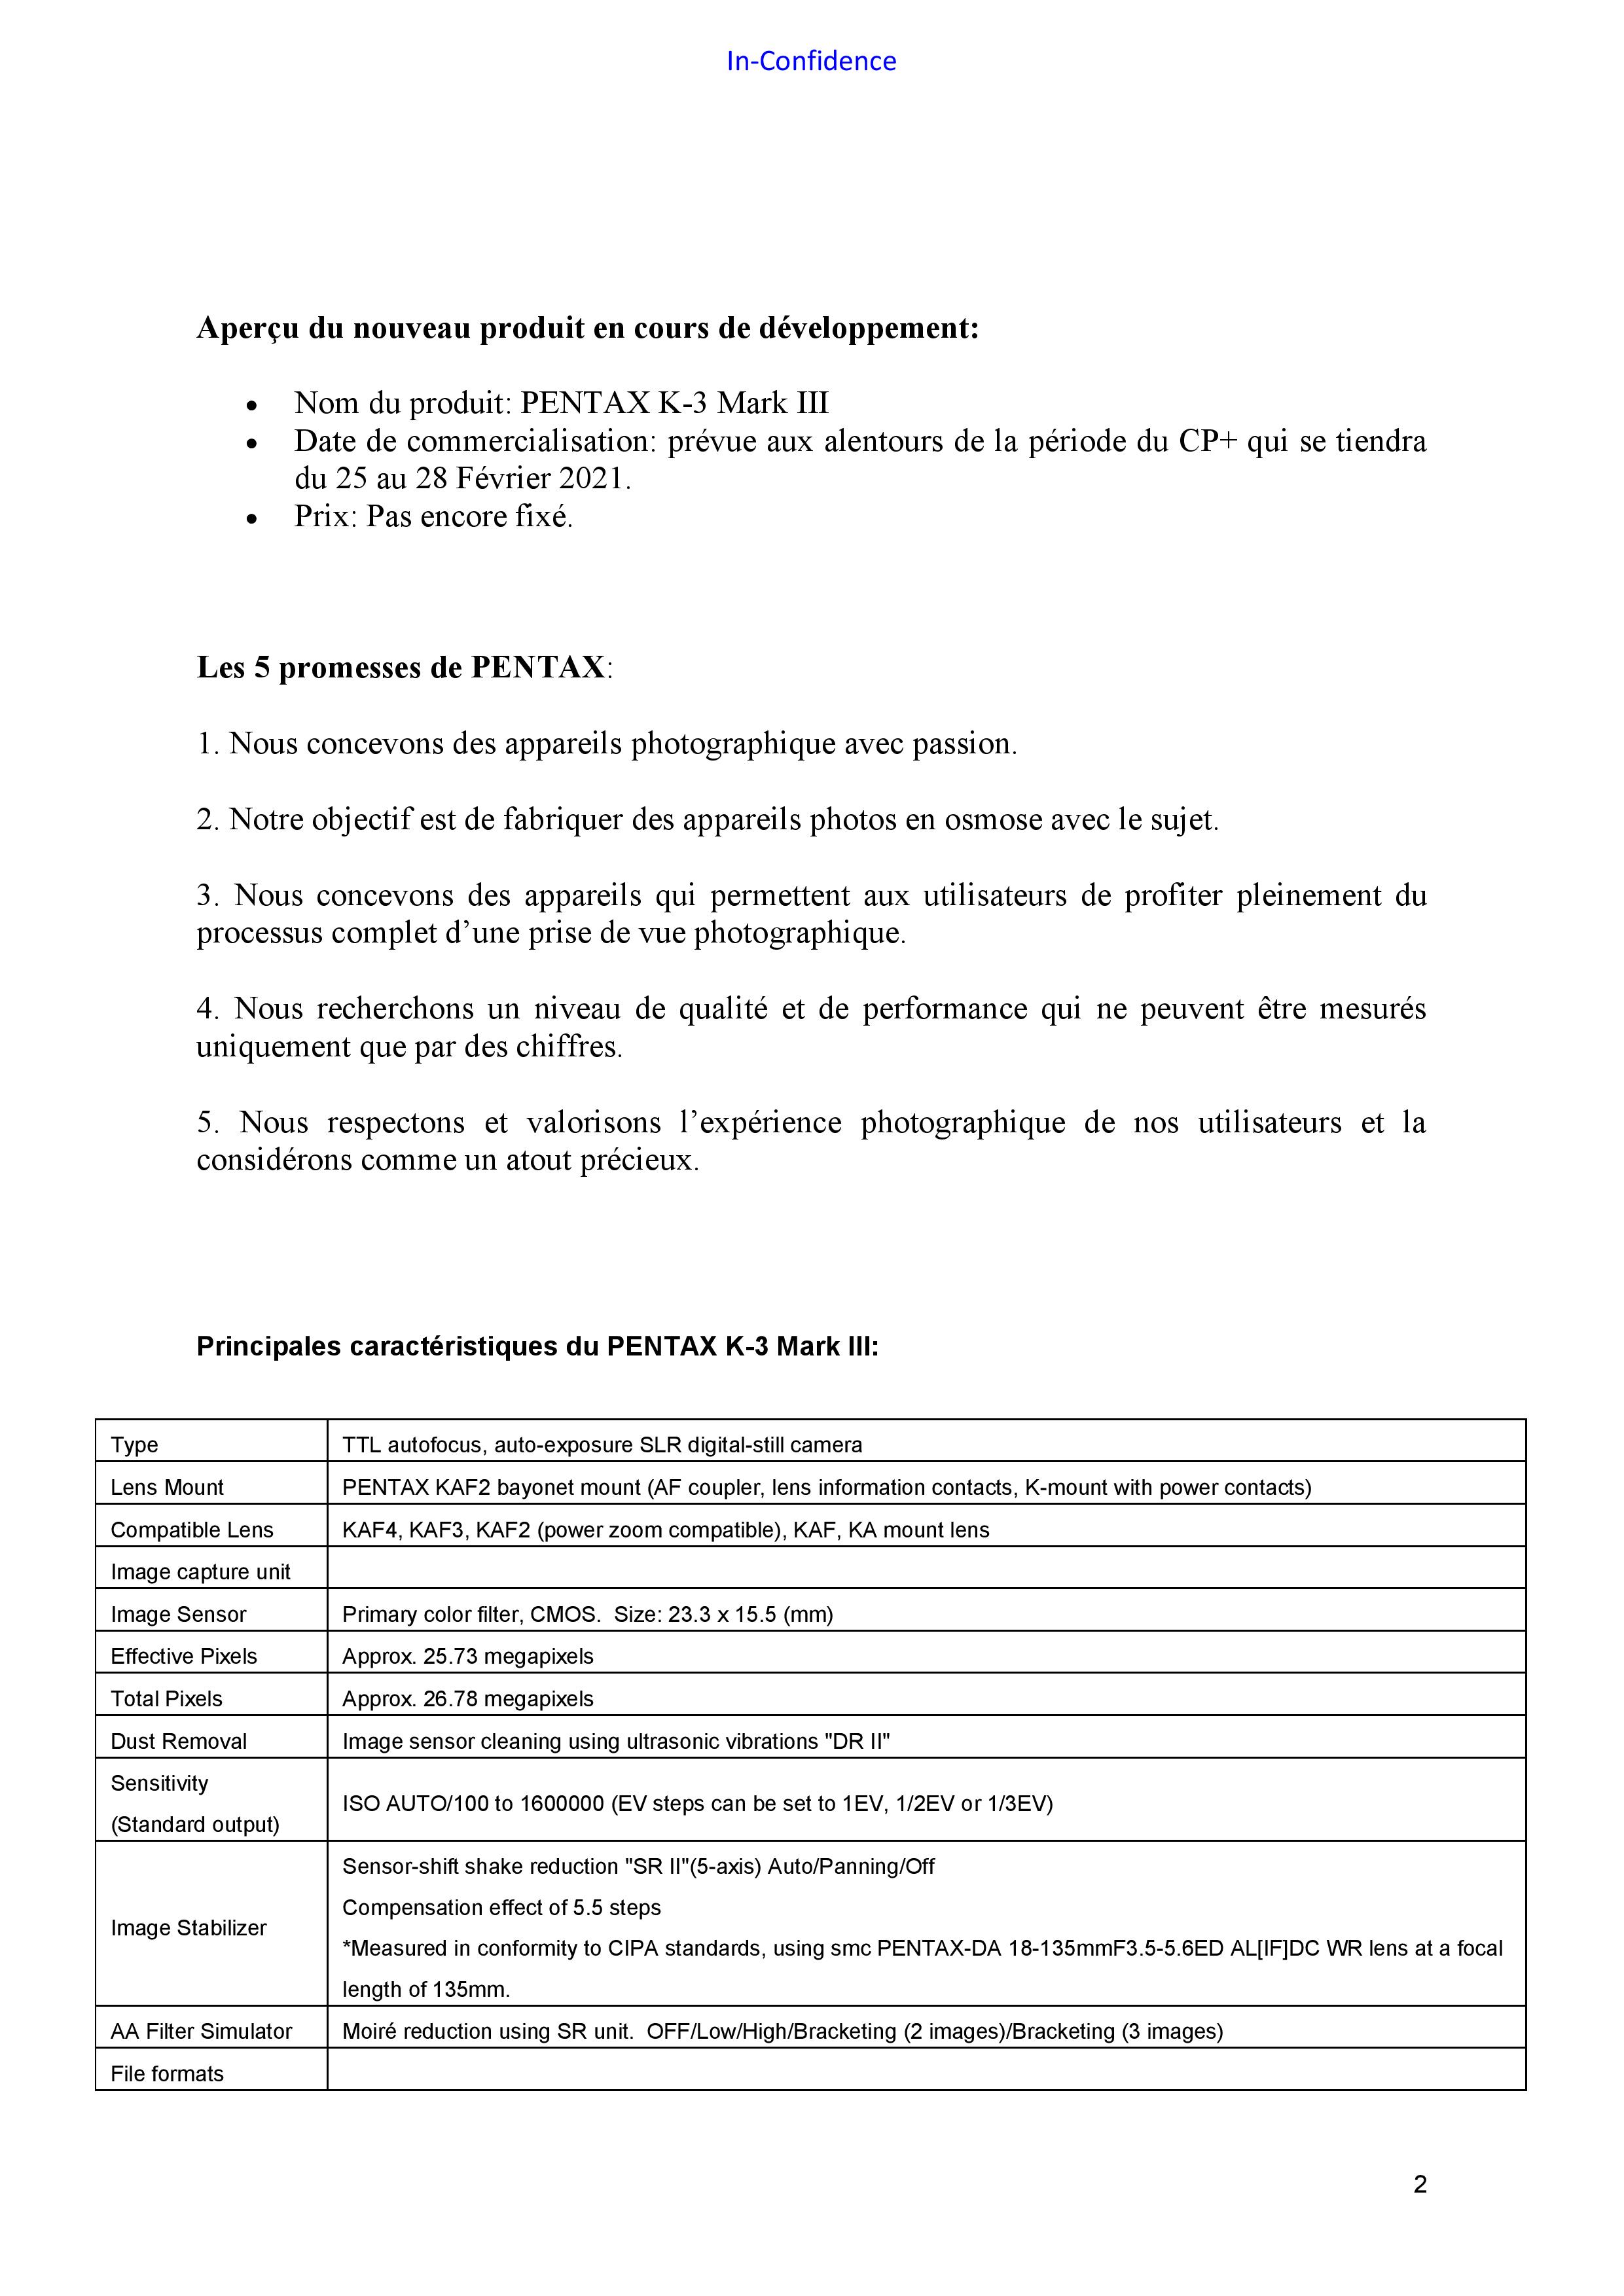 RICOH PENTAX Informations nouveau boîtier APS_C 20110404415923142217109633